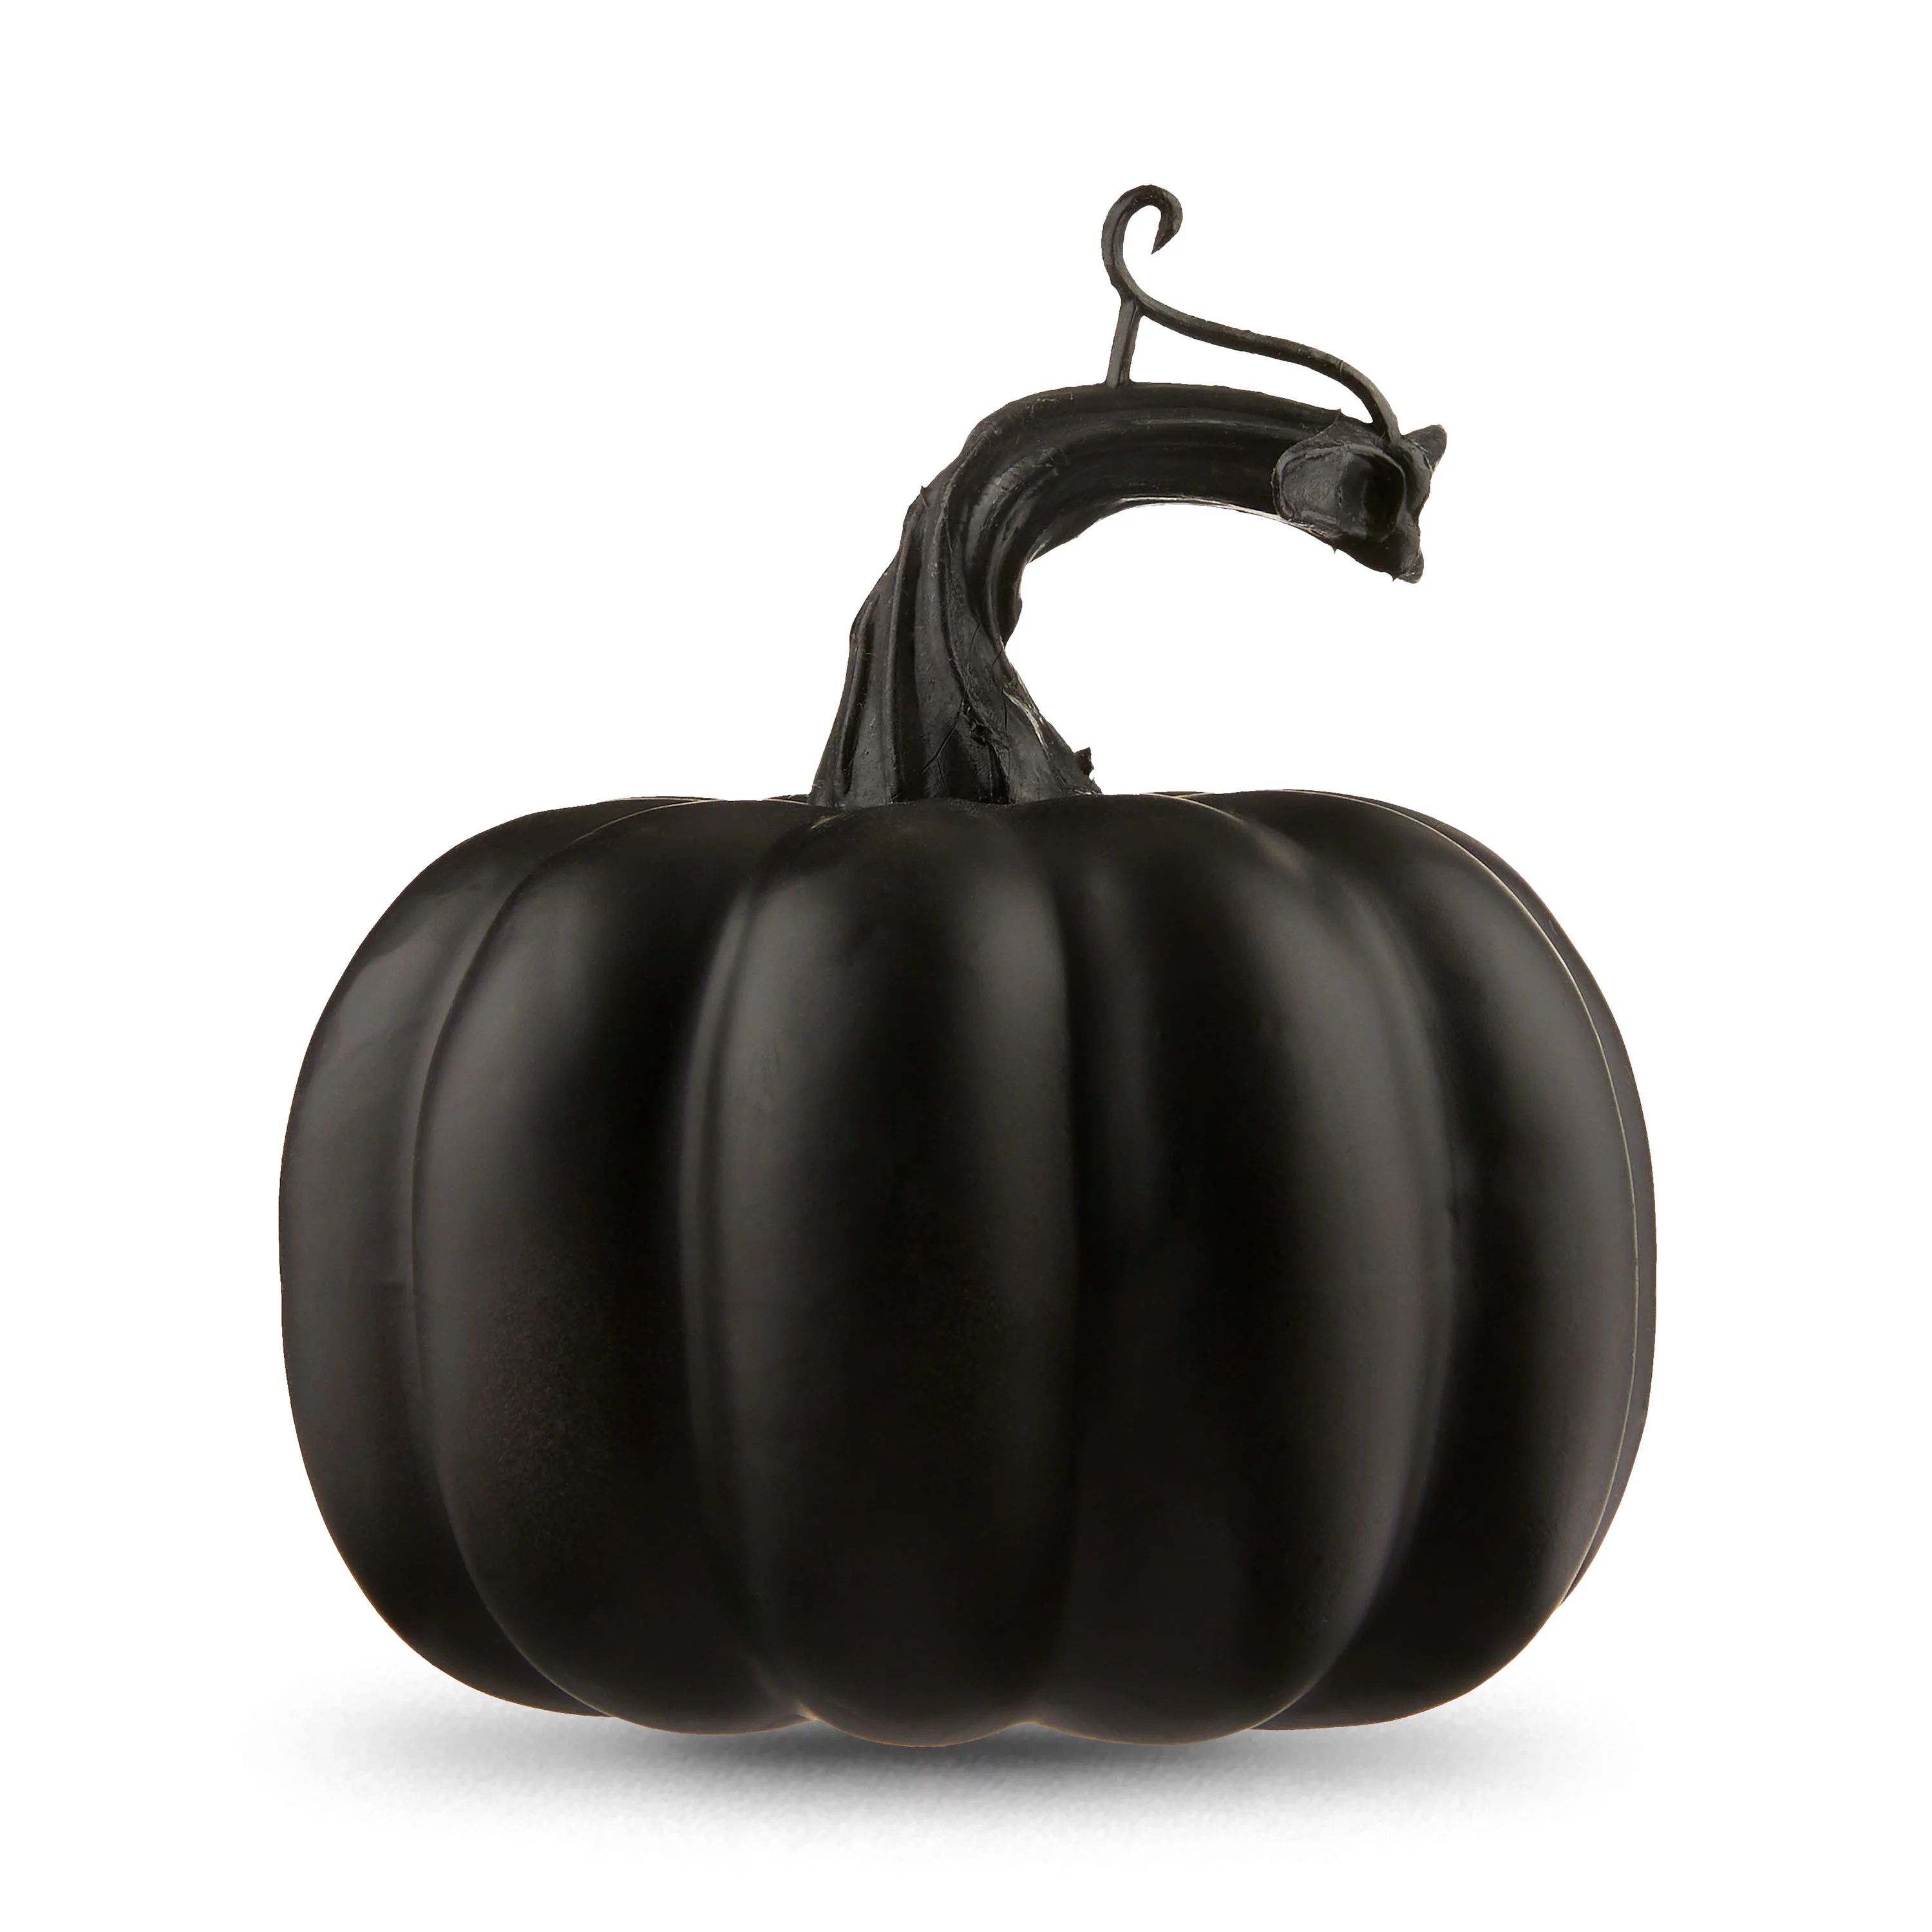 Halloween Mini Black Foam Pumpkin Decoration 3.5 in L x 3.5 in W x 3.5 in H, by Way To Celebrate | Walmart (US)